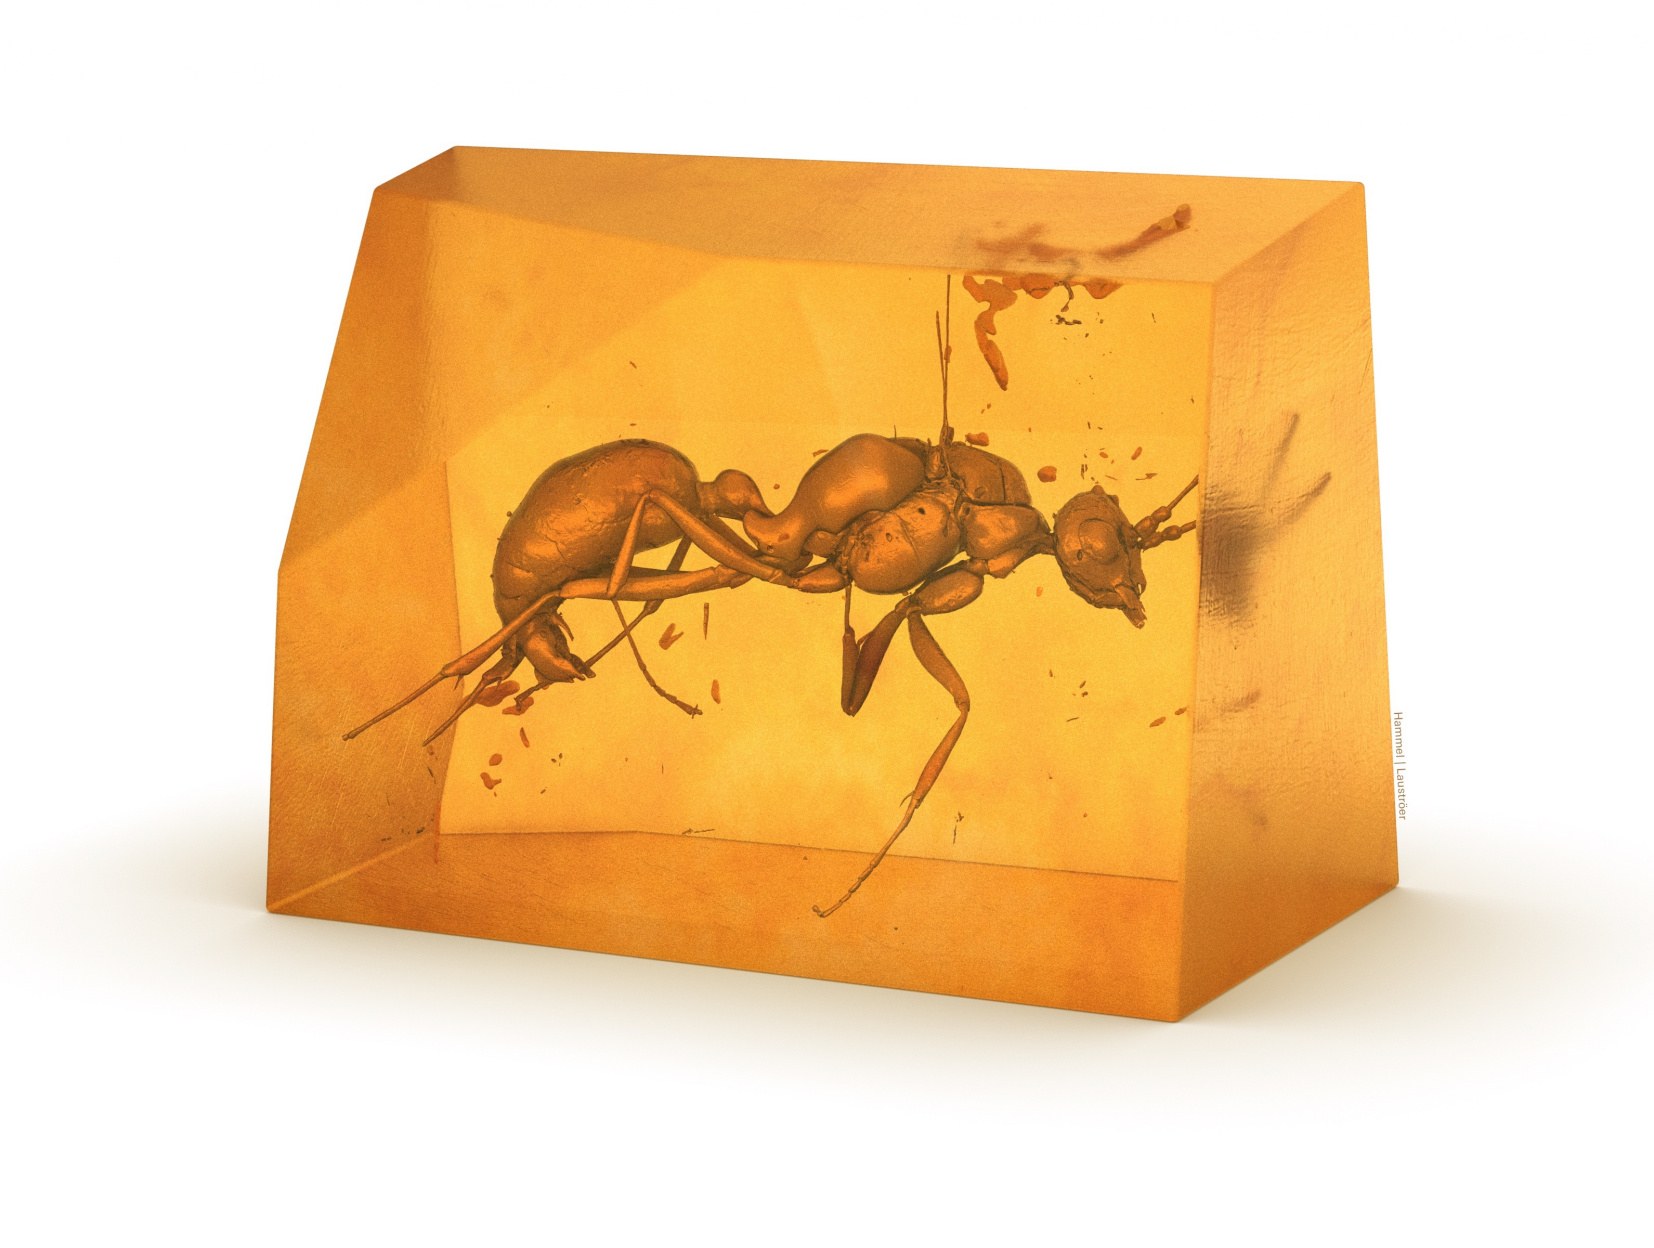 Imagine tridimensională a speciilor de furnici dispărute necunoscute anterior.